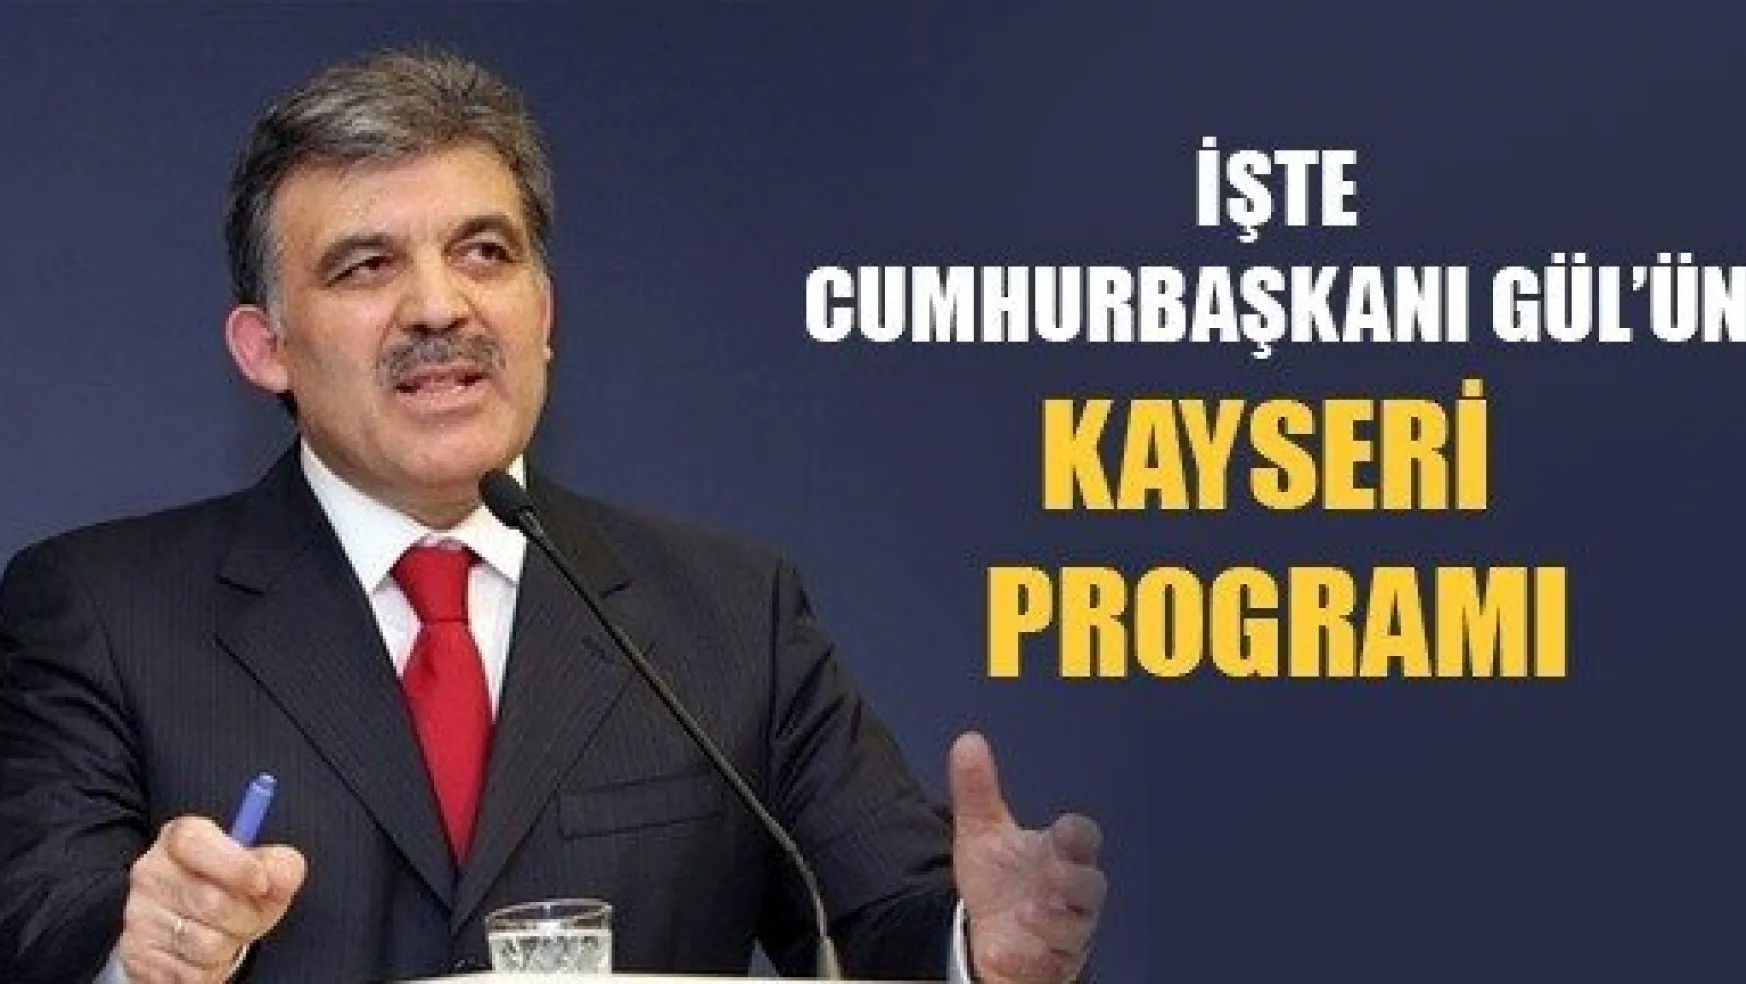 Cumhurbaşkanı Gül'ün Kayseri Programı Belli Oldu